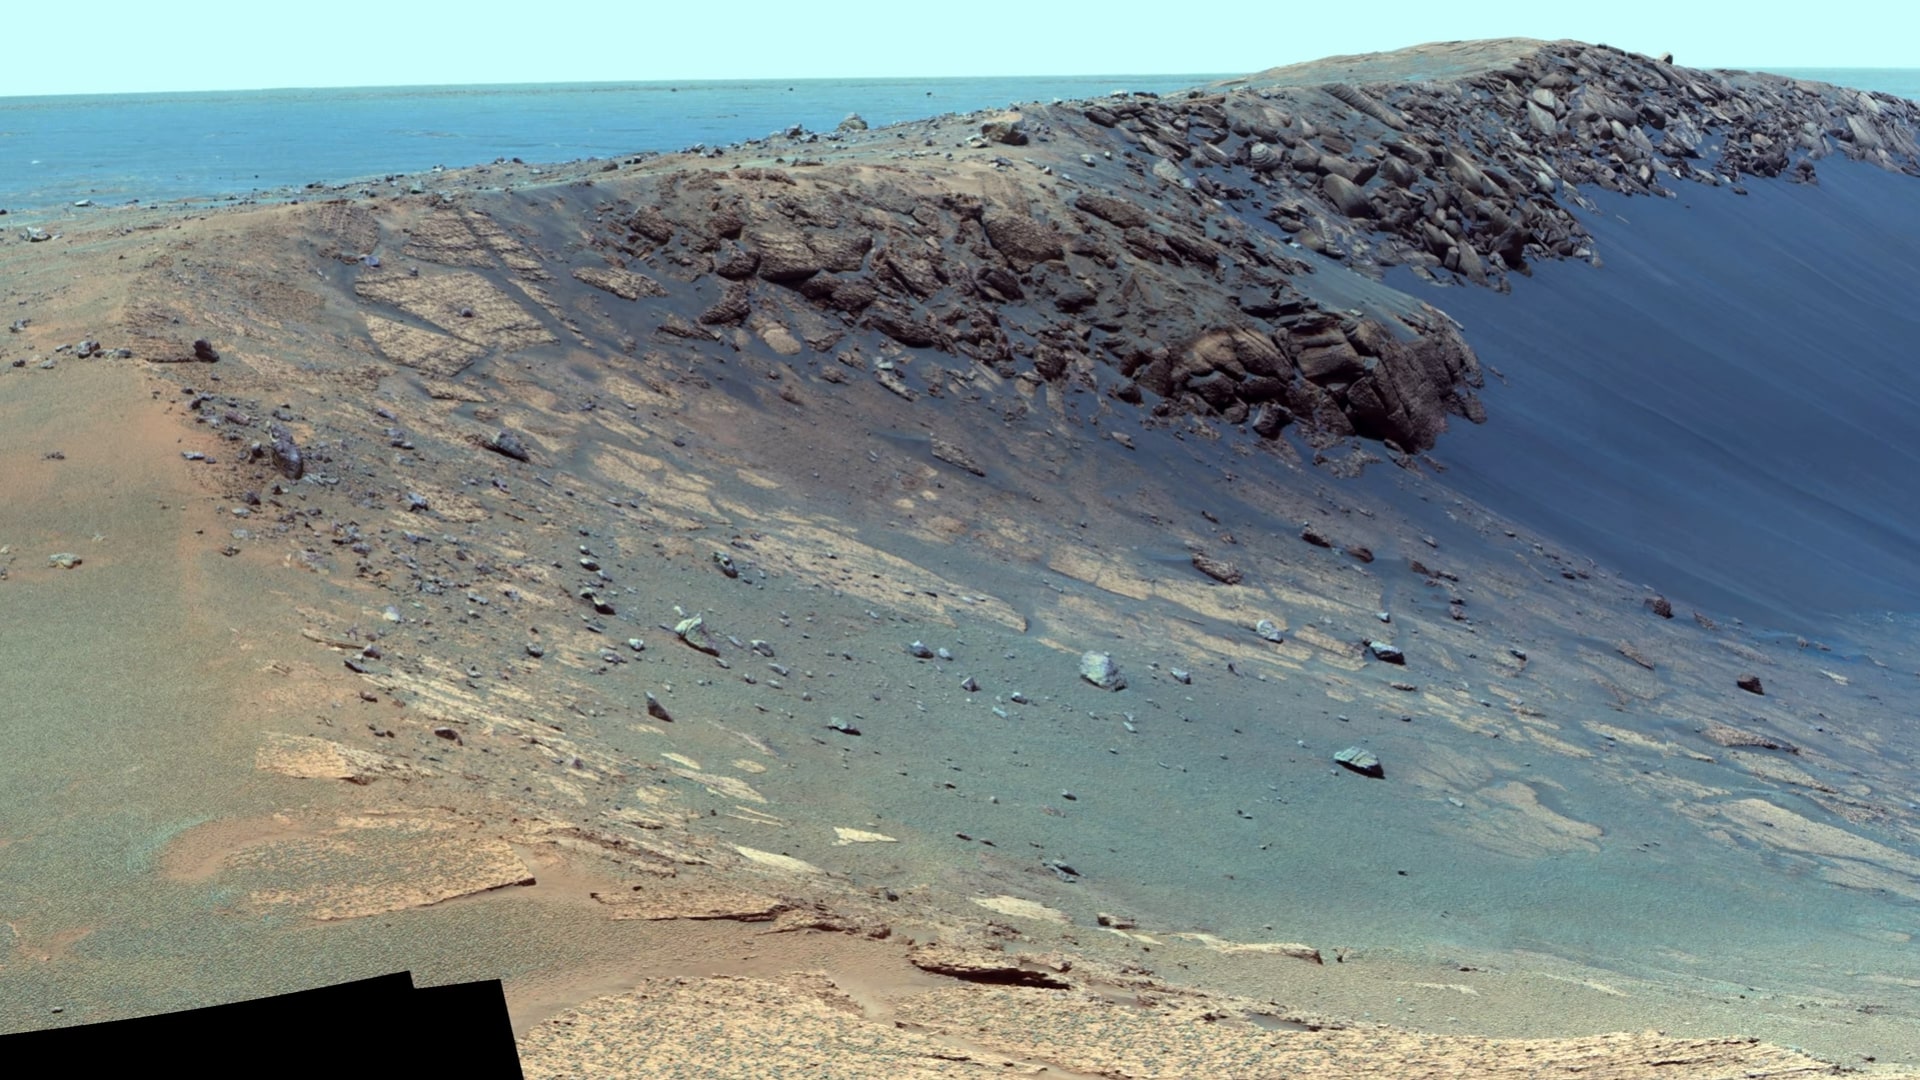 Cùng khám phá bề mặt Sao Hỏa tuyệt đẹp trong video 4K sắc nét